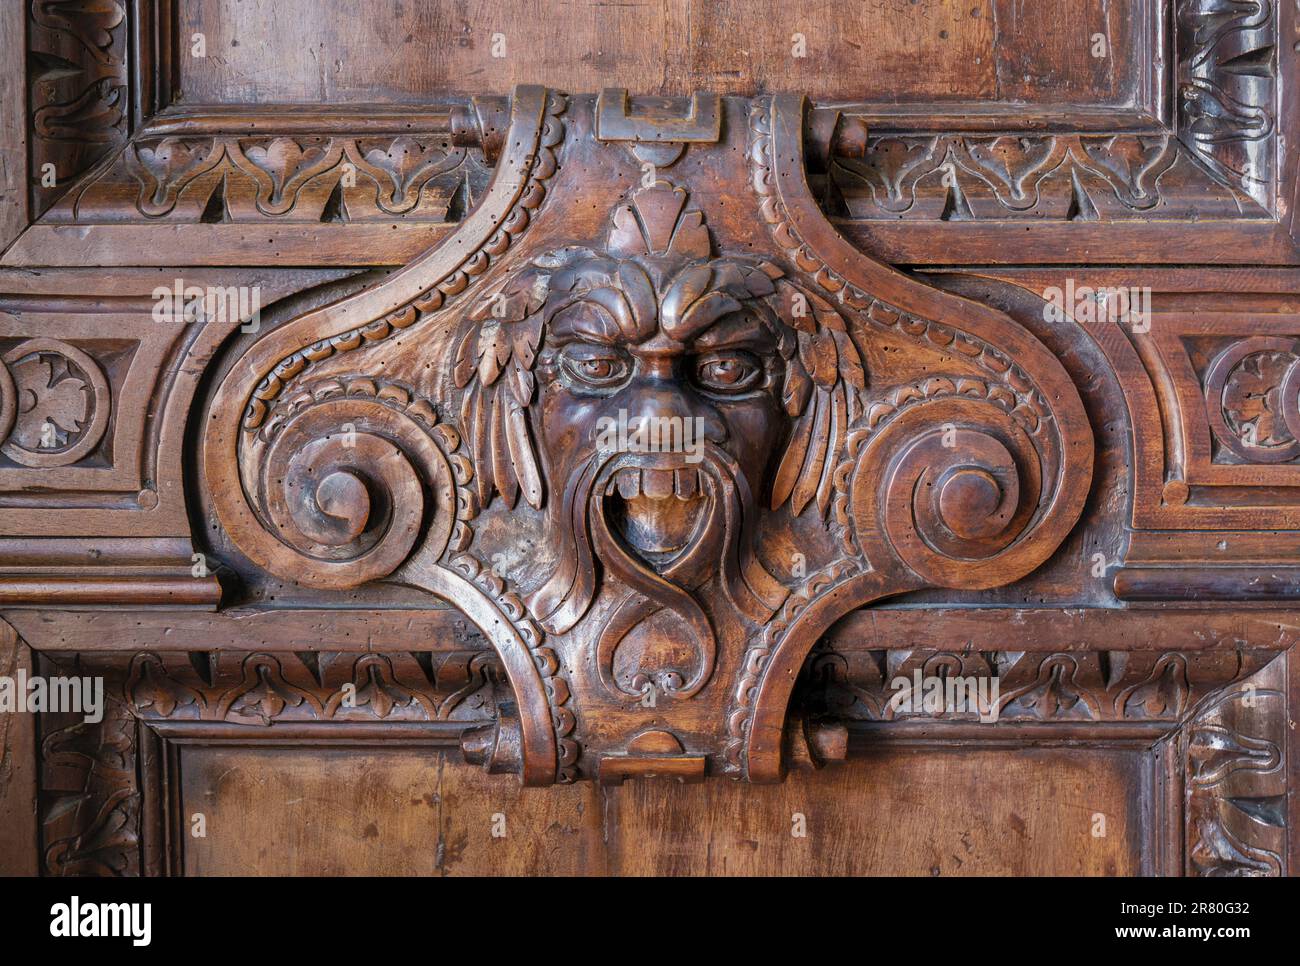 Face grotesque sculptée en bois dans le Palazzo Ducale ou le Palais des Doges, Venise, Italie. Venise est un site classé au patrimoine mondial de l'UNESCO. Banque D'Images